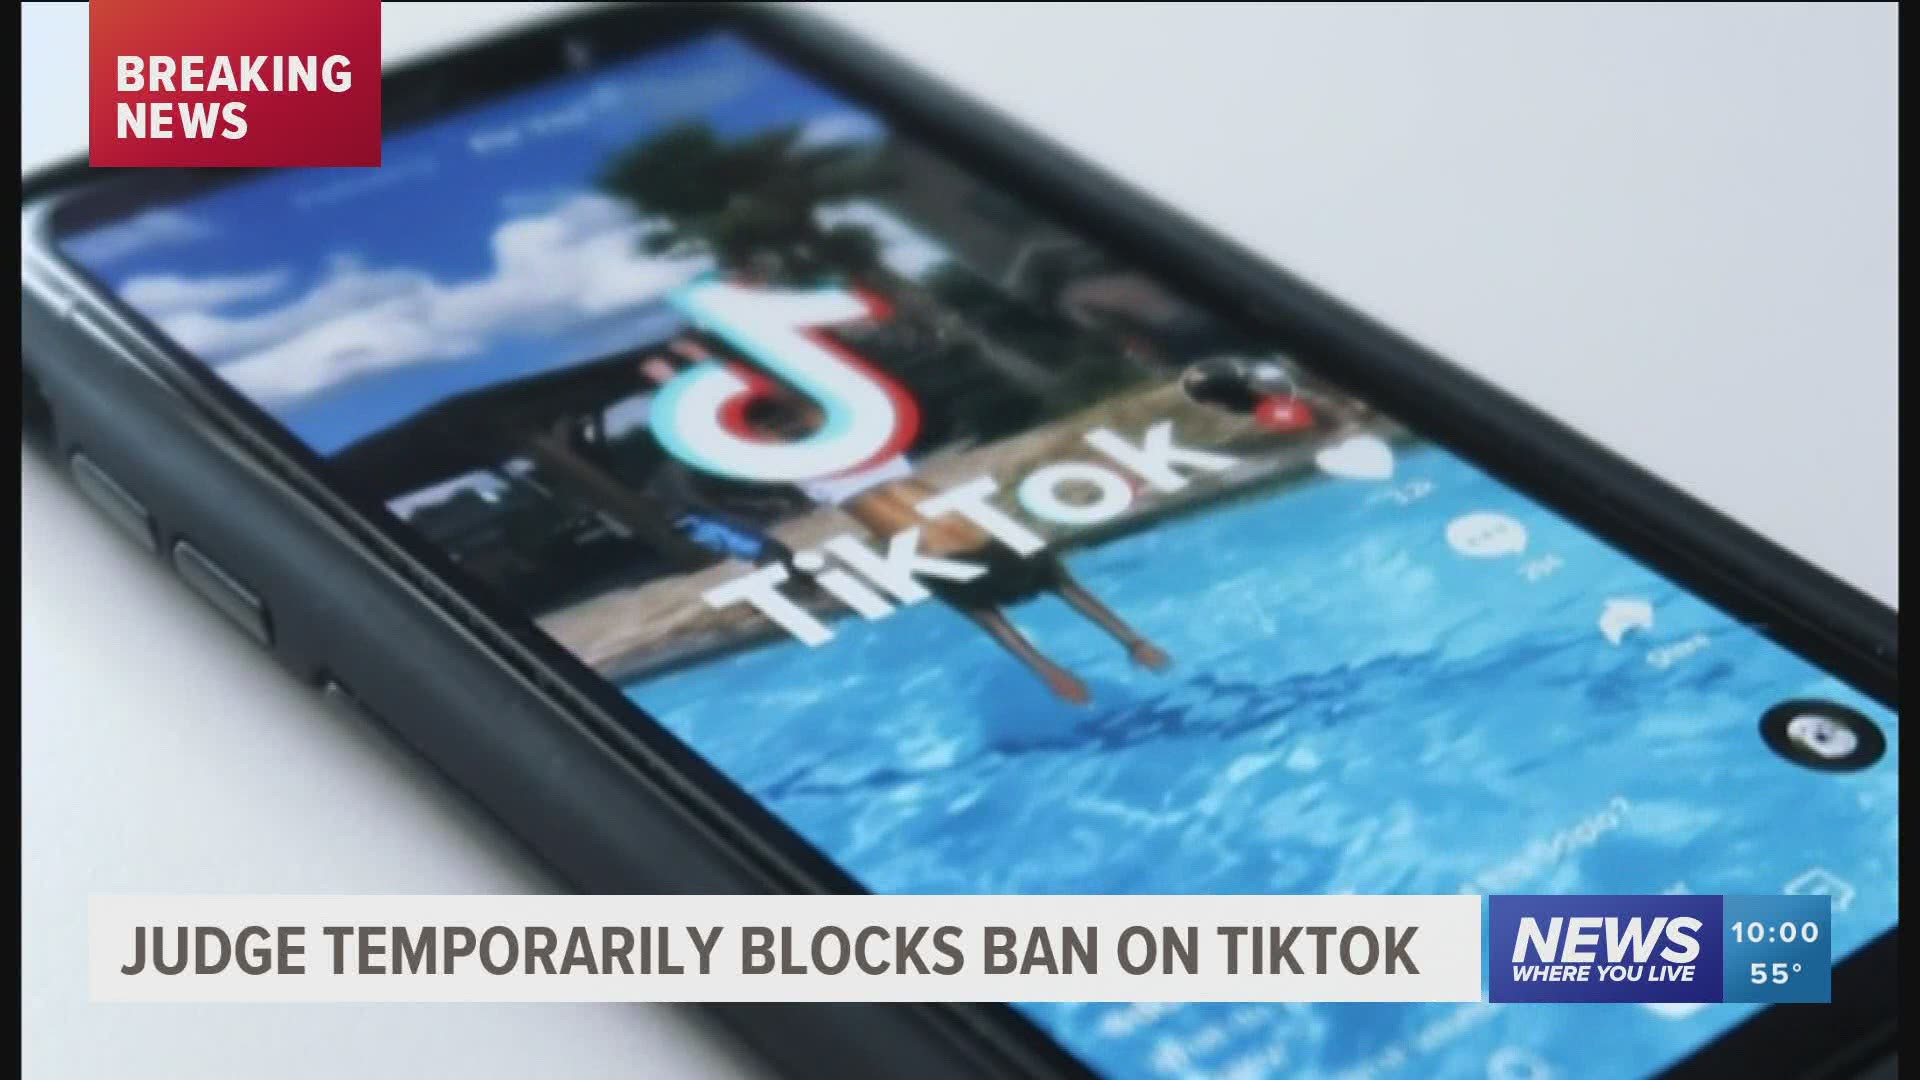 Judge temporarily blocks ban on Tiktok.